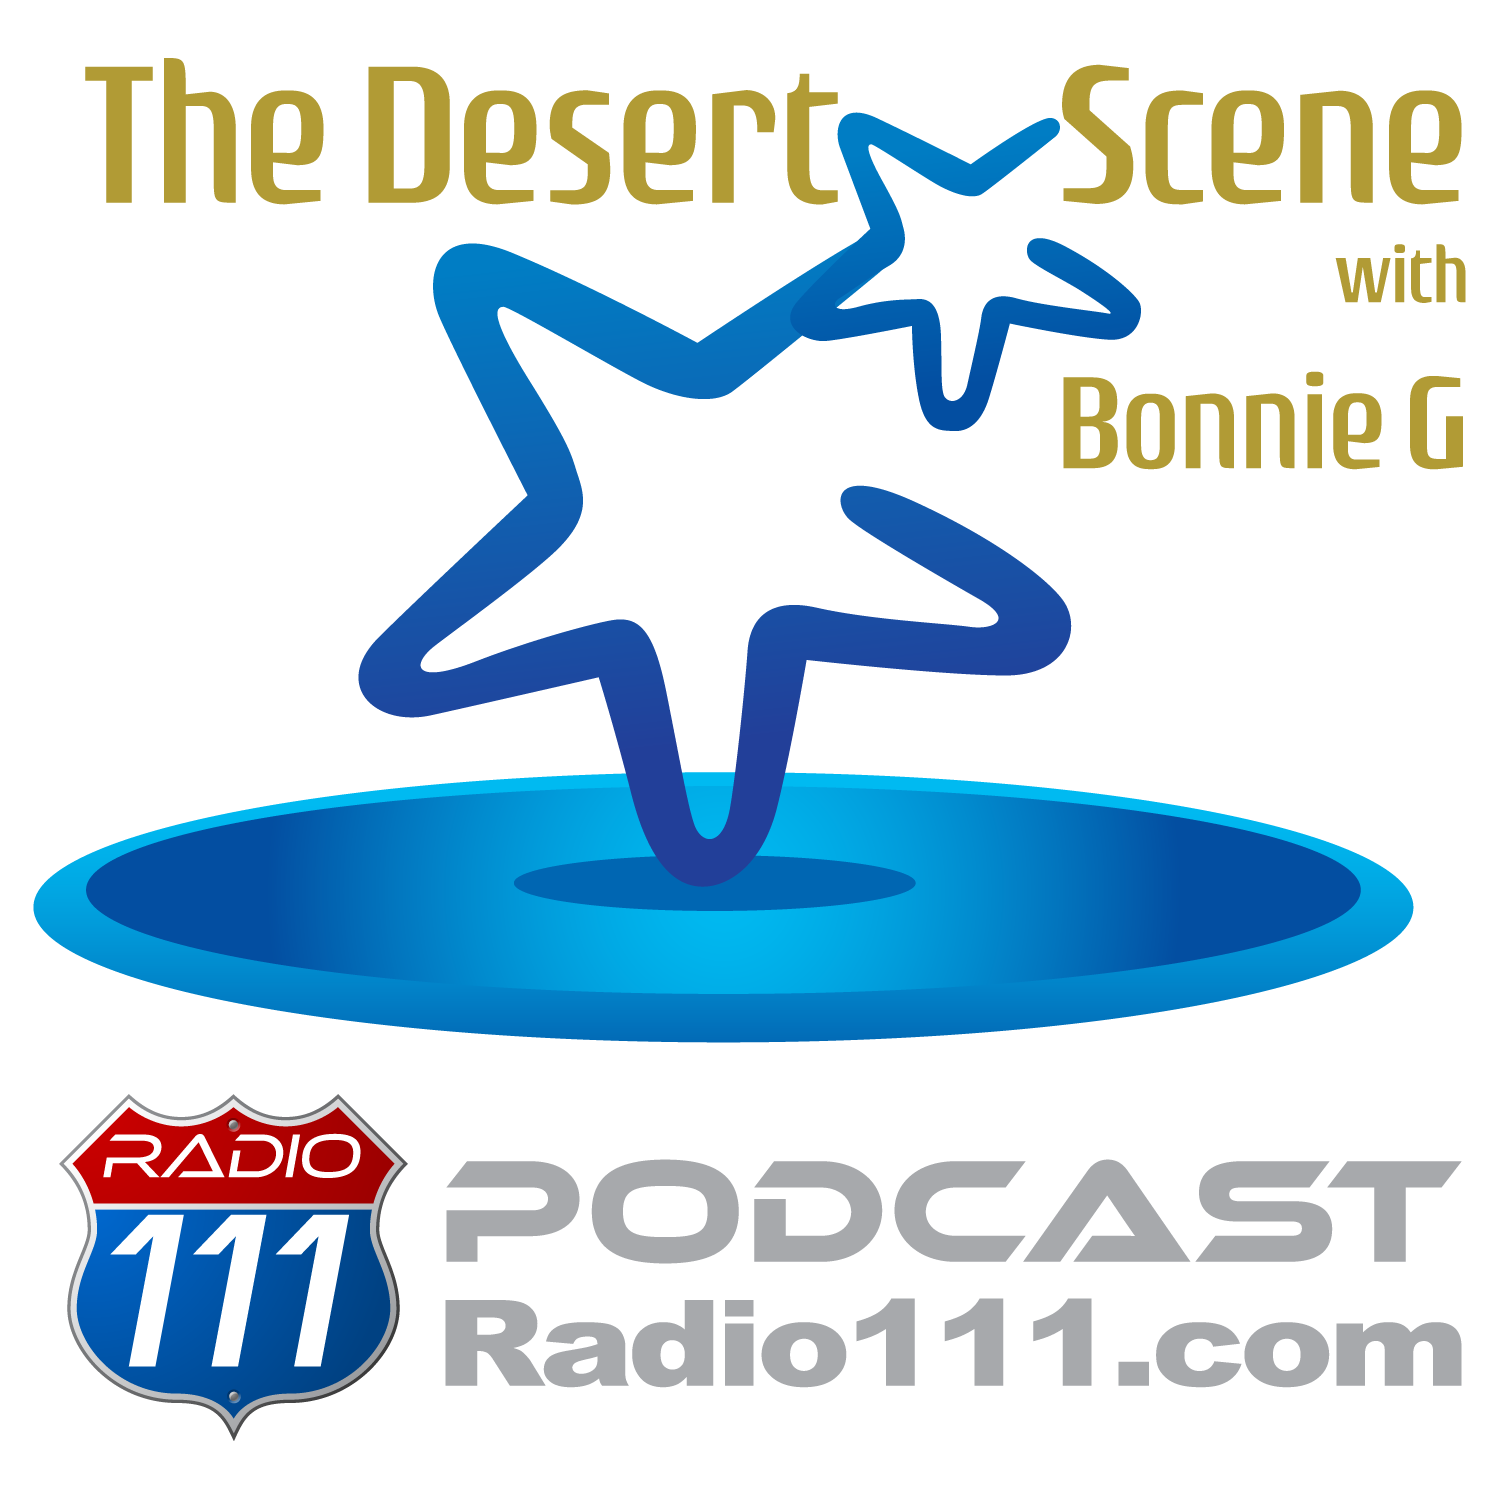 Artwork for podcast The Desert Scene